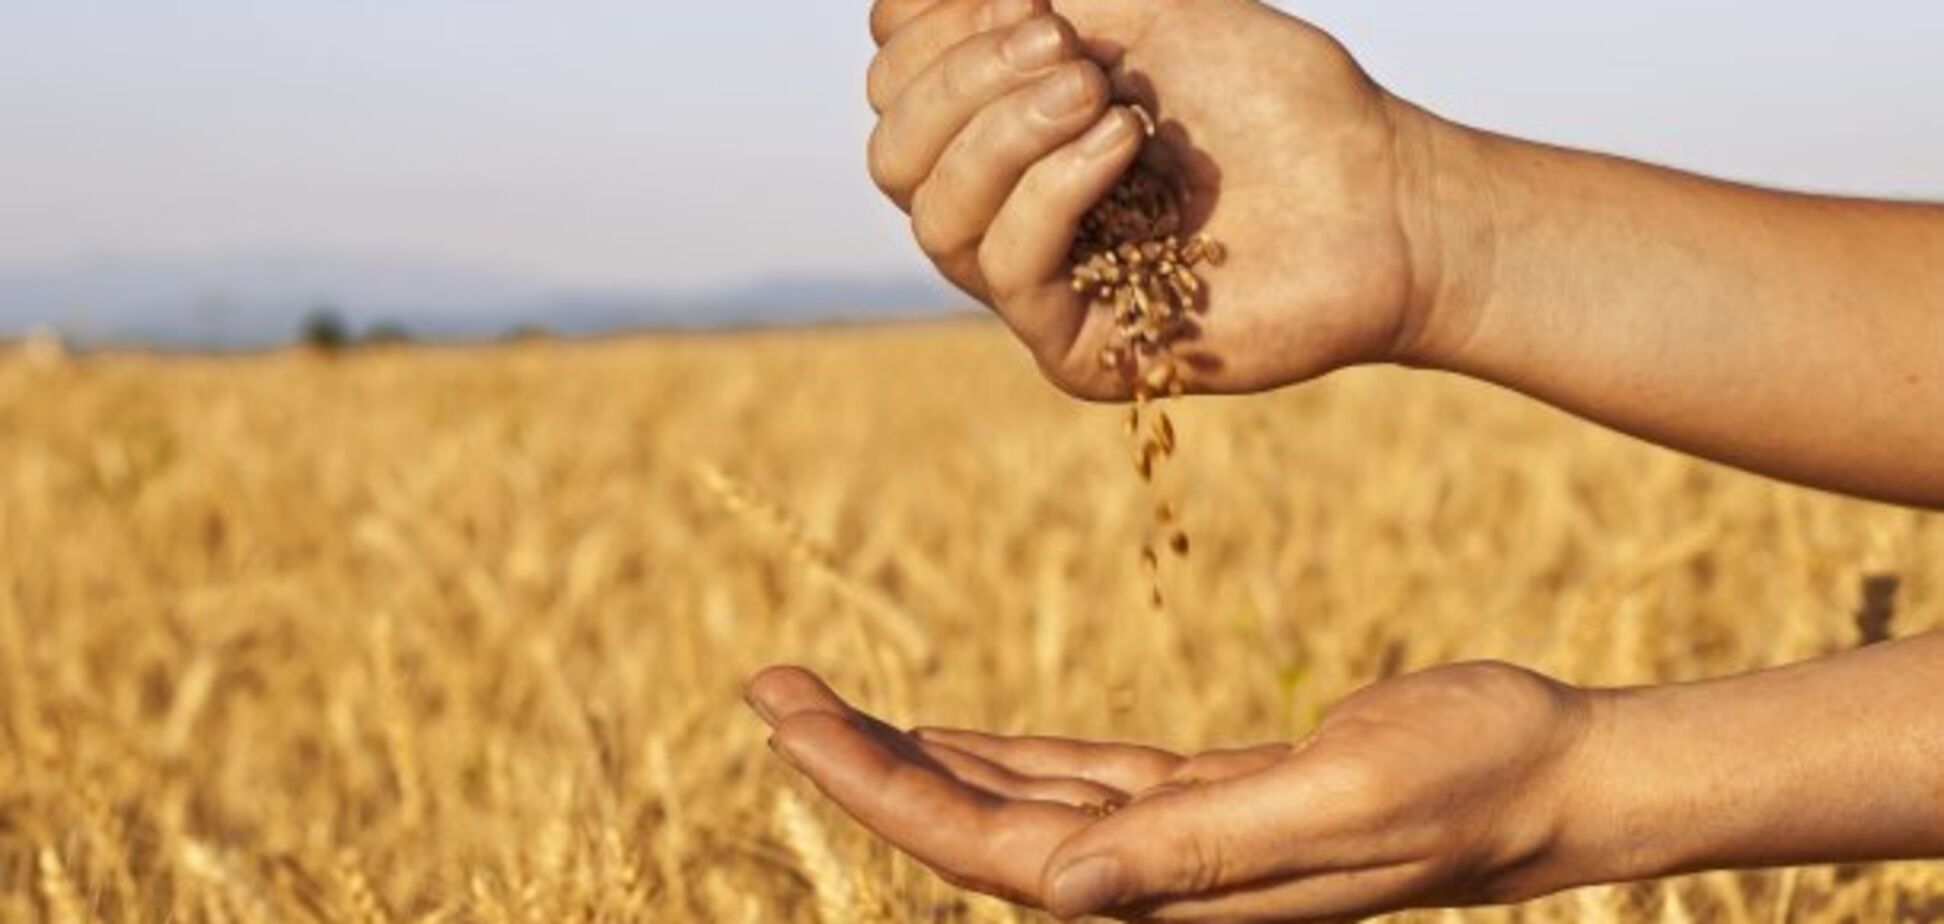 Почти 800 гривен на тонне зерновых теряют аграрии из-за коллапса на железной дороге – Козаченко